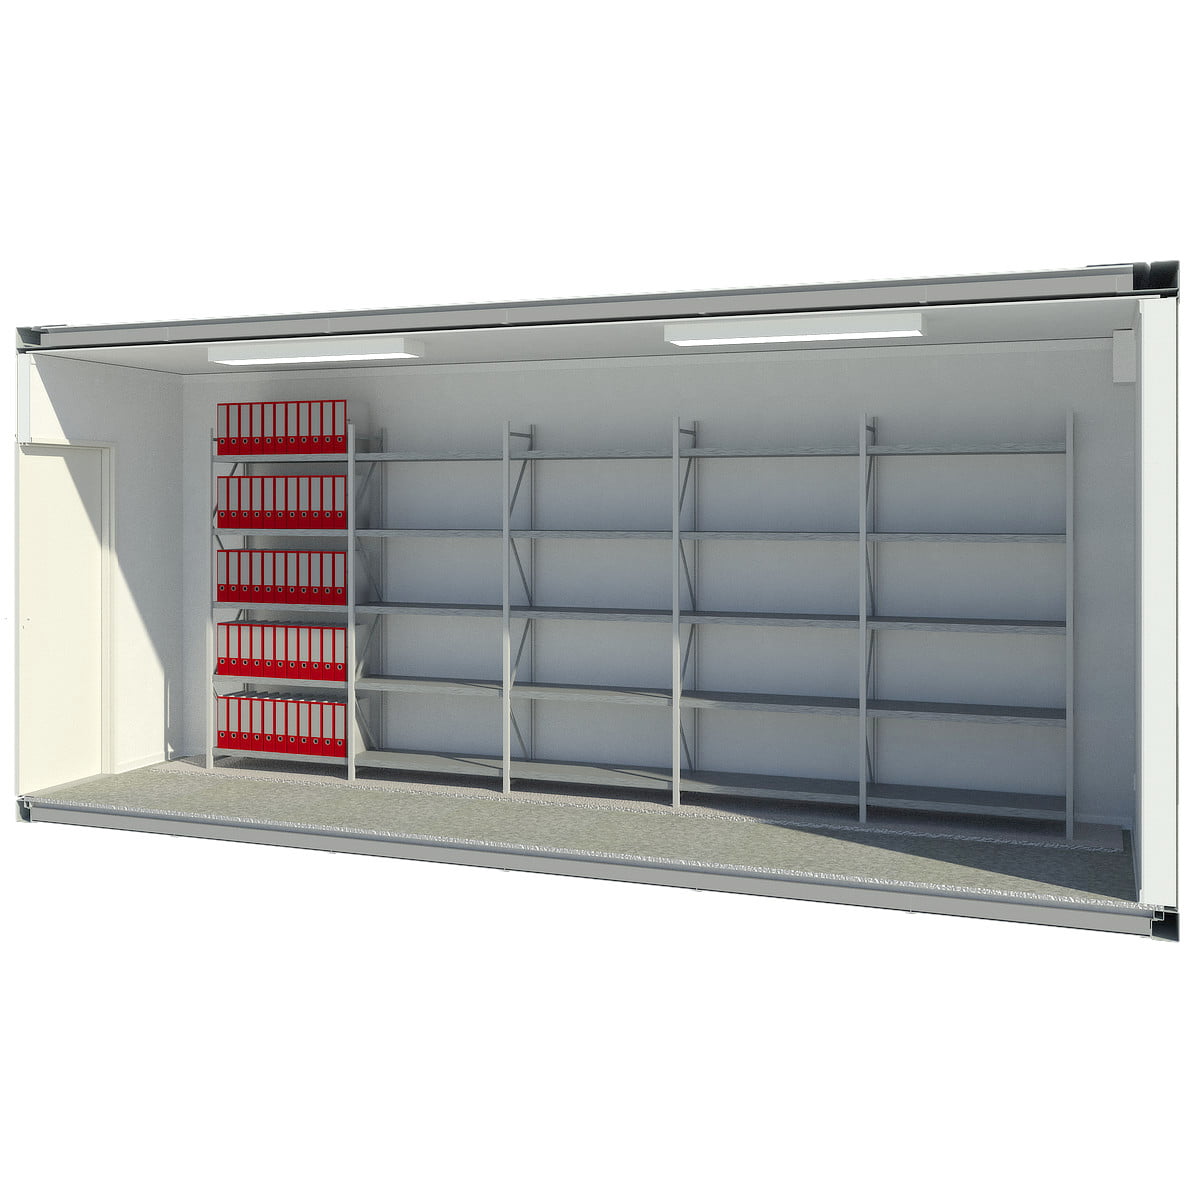 Archivcontainer mit Regalen für bis zu 550 Ordner - 6x2,4m - economy.line - 600AR-EL-M-4